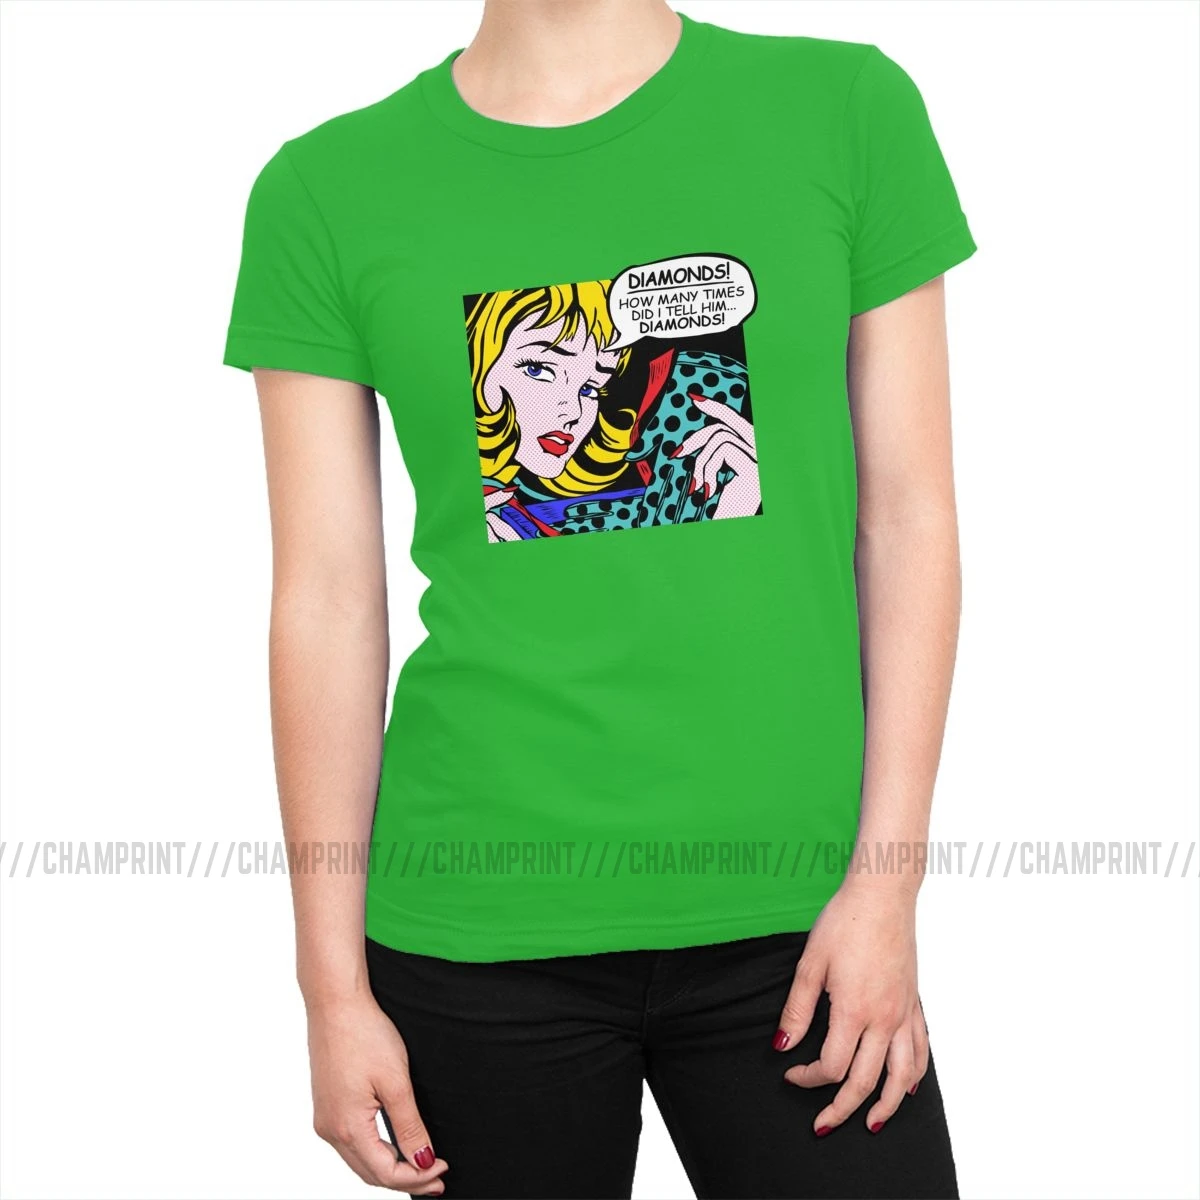 Roy Lichtenstein комическое искусство девушка с перчатками футболки женские корейский стиль поп-арт футболка футболки tumblr топы Женская одежда - Цвет: Зеленый